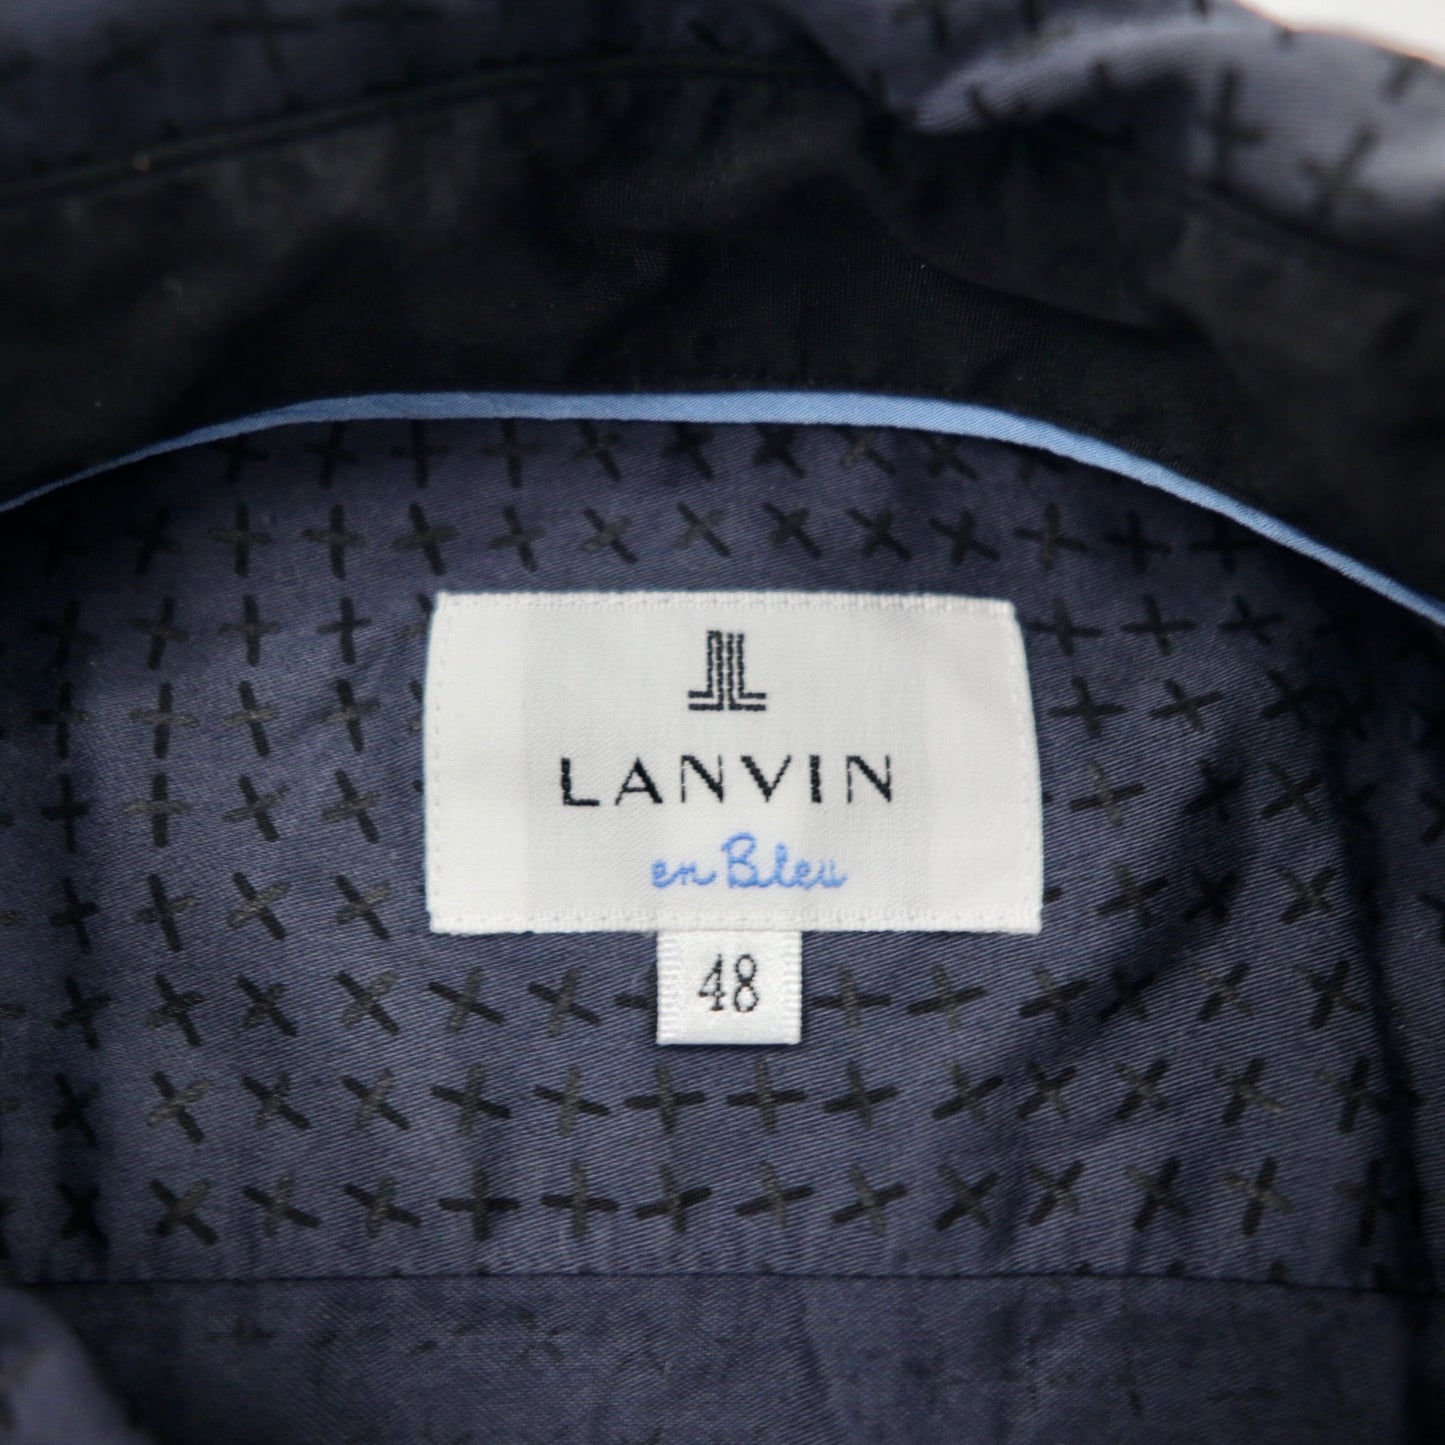 LANVIN en Bleu シャツ 48 ネイビー 総柄